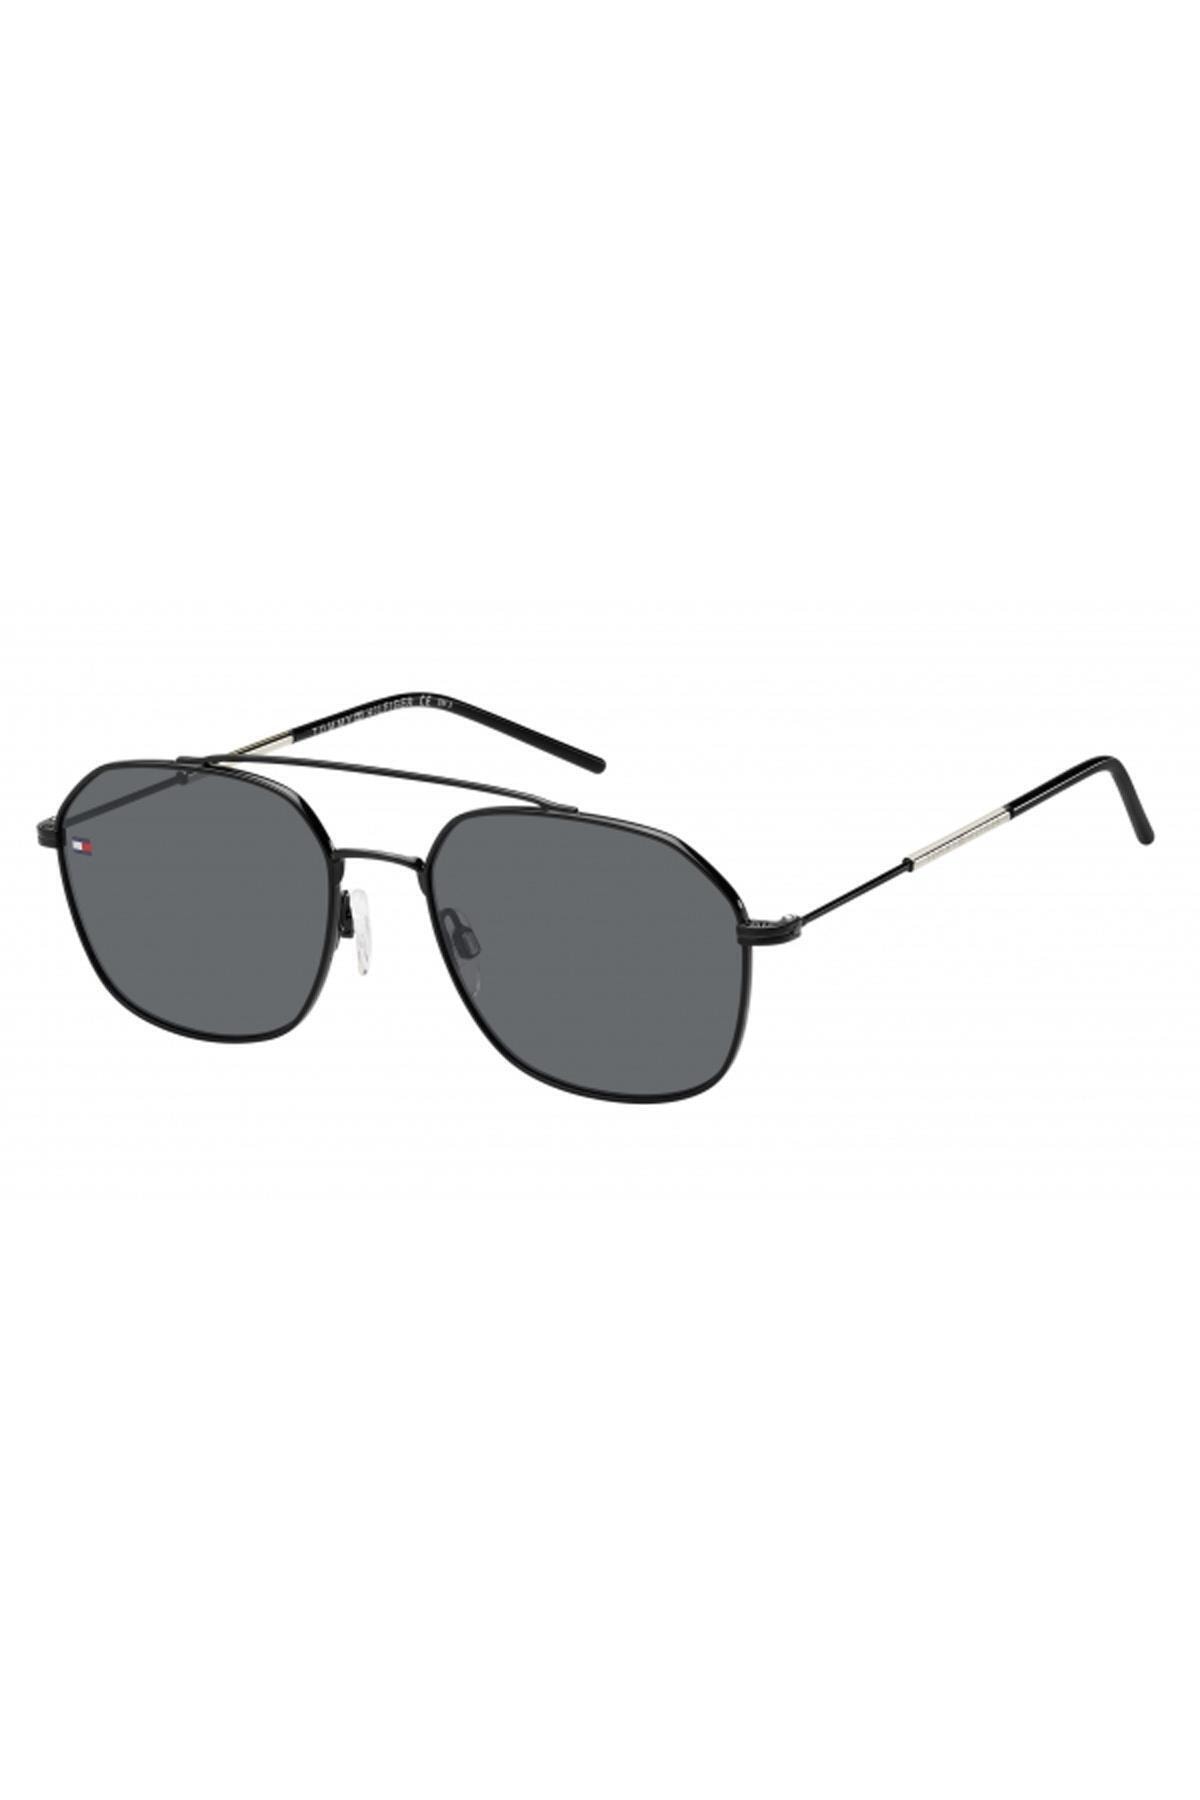 عینک آفتابی مردانه سفید برند tommy hilfiger 1599/S 807 IR 55 G 